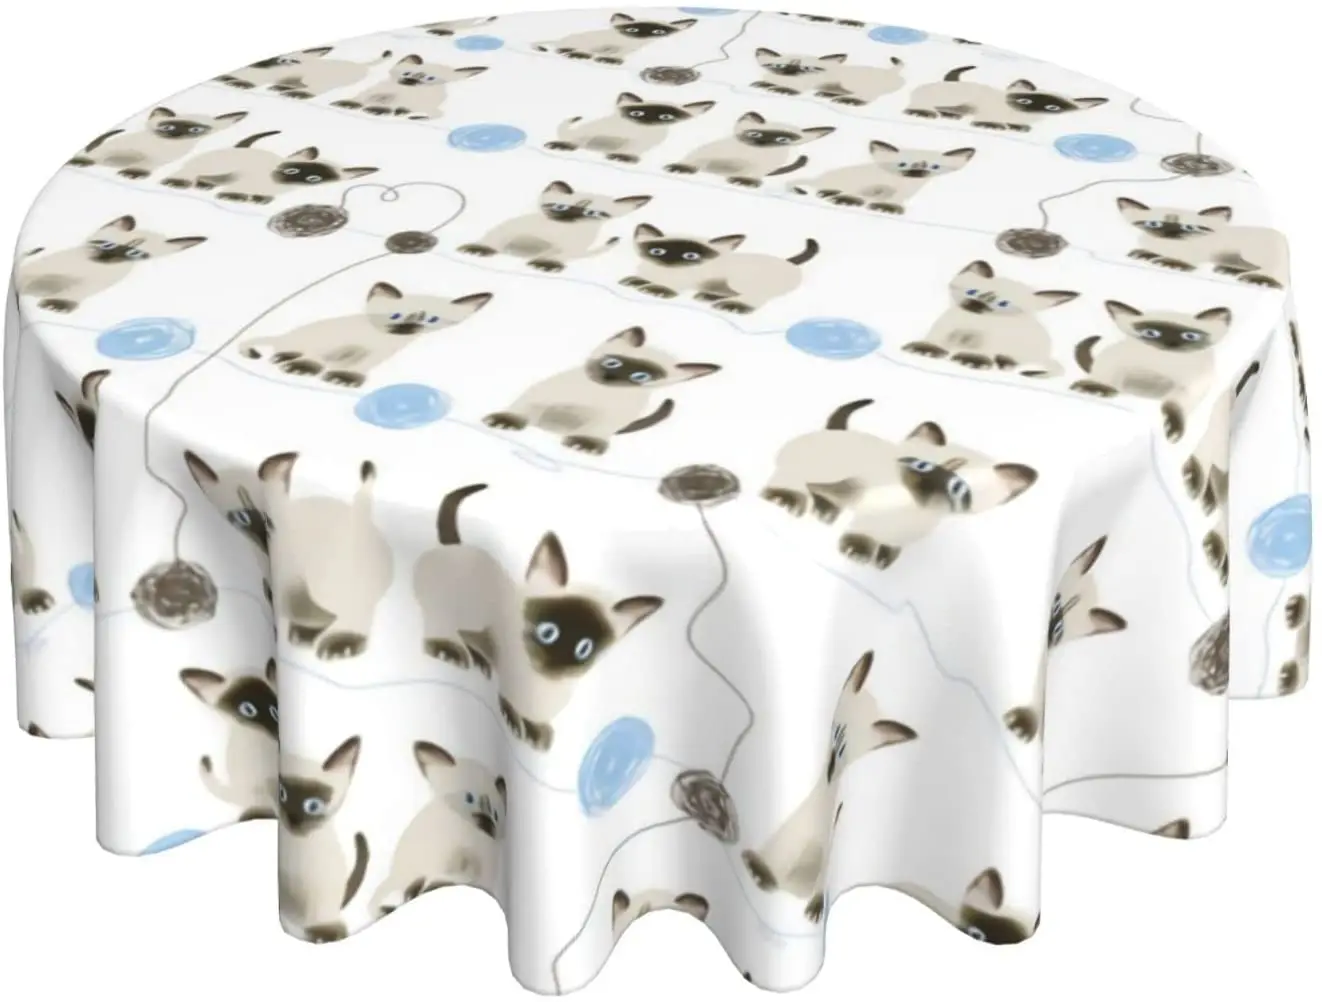 

Круглая скатерть с шариками Siamese Kittens, устойчивая к образованию морщин моющаяся скатерть из полиэстера для стола в помещении и на улице